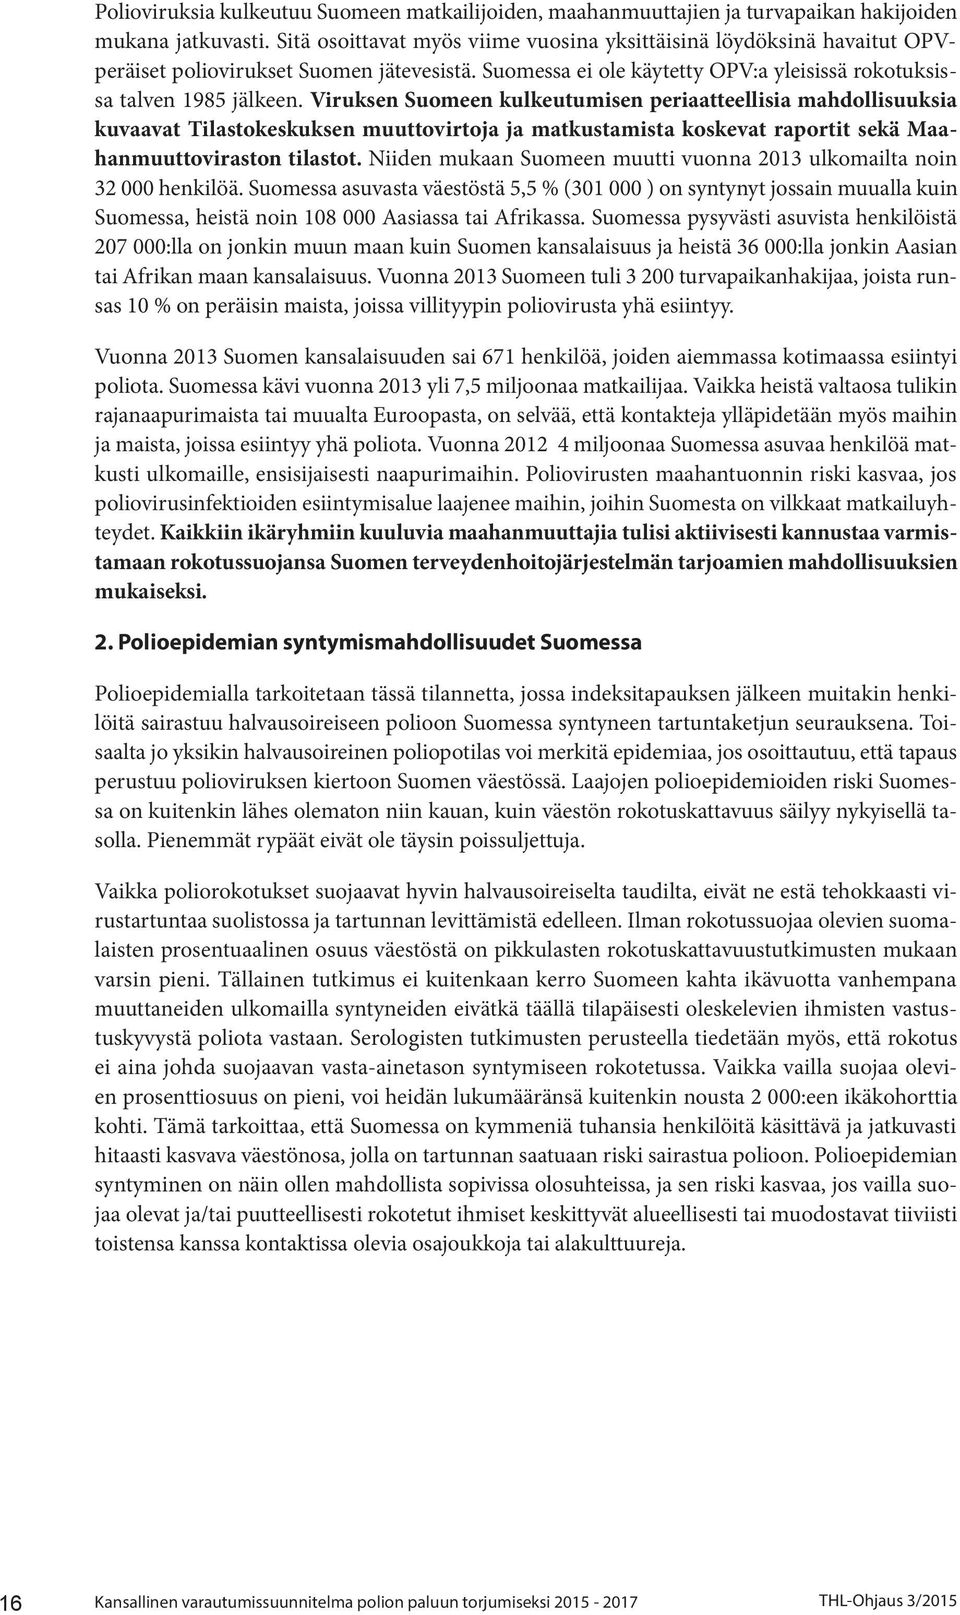 Viruksen Suomeen kulkeutumisen periaatteellisia mahdollisuuksia kuvaavat Tilastokeskuksen muuttovirtoja ja matkustamista koskevat raportit sekä Maahanmuuttoviraston tilastot.